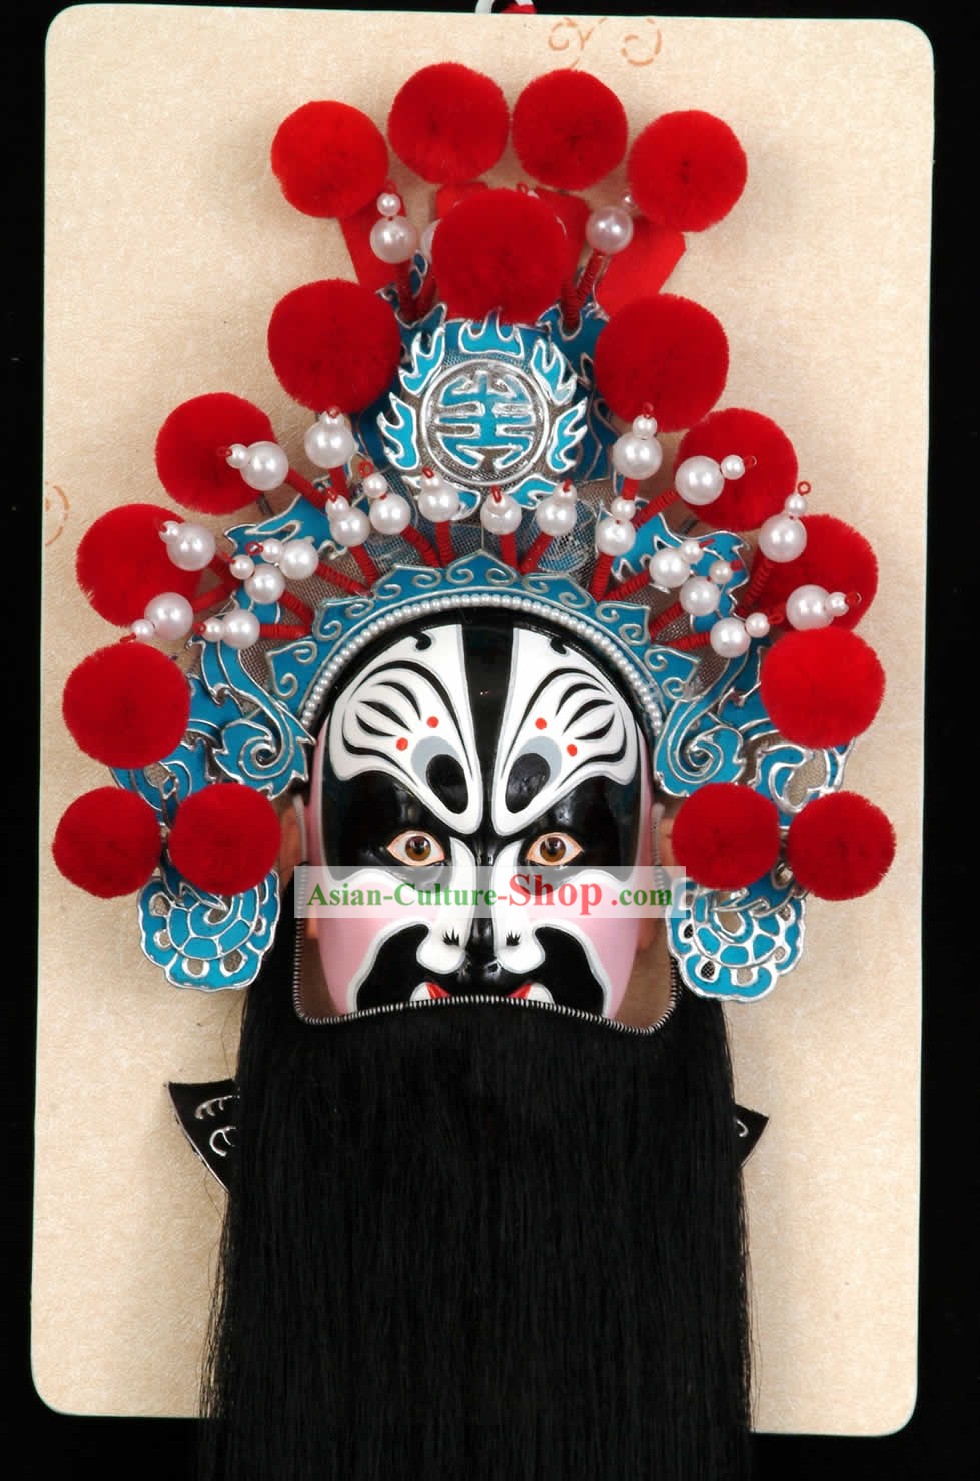 Artigianali dell'Opera di Pechino Decorazione maschera appendiabiti - Zhang Fei